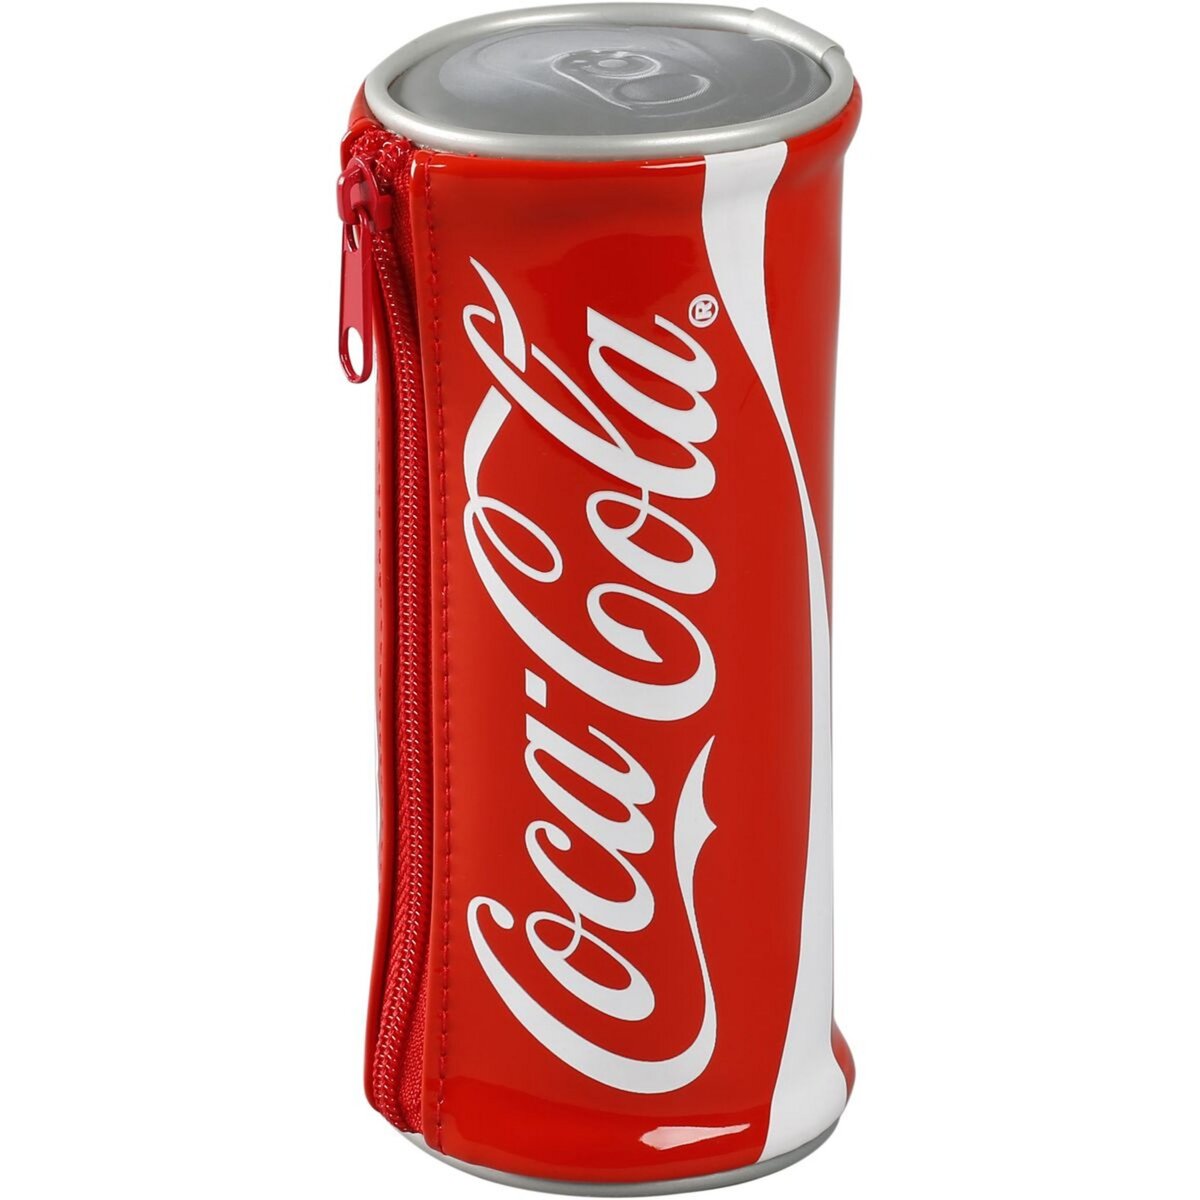 Trousse Coca-Cola, trousse Coca blanche